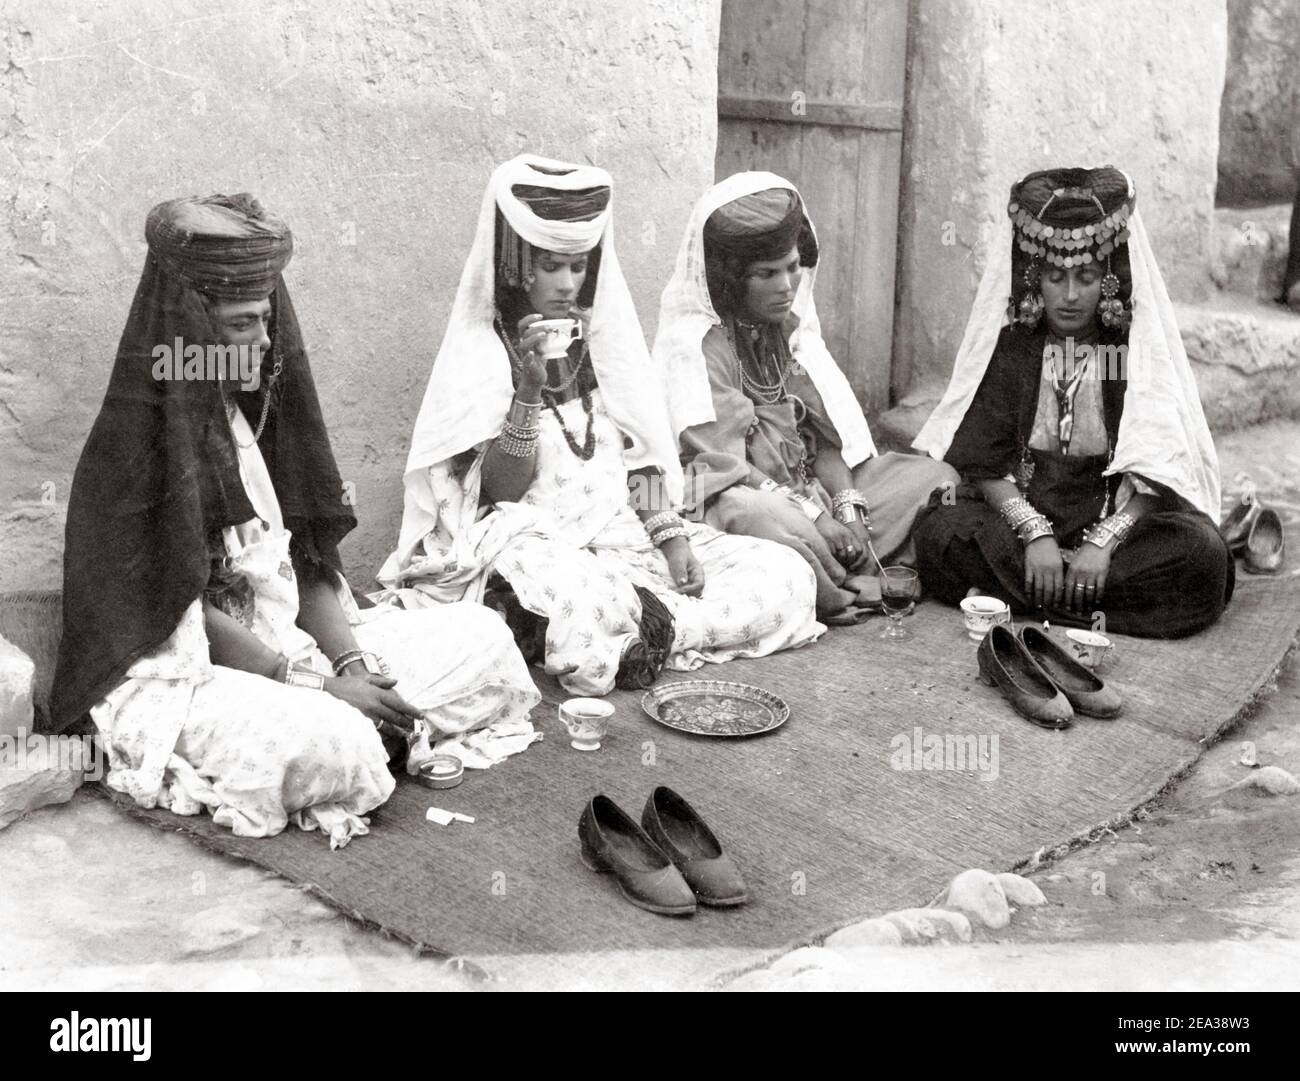 Photographie de la fin du XIXe siècle - femmes de Nail Ouled, Algérie, c.1890 Banque D'Images